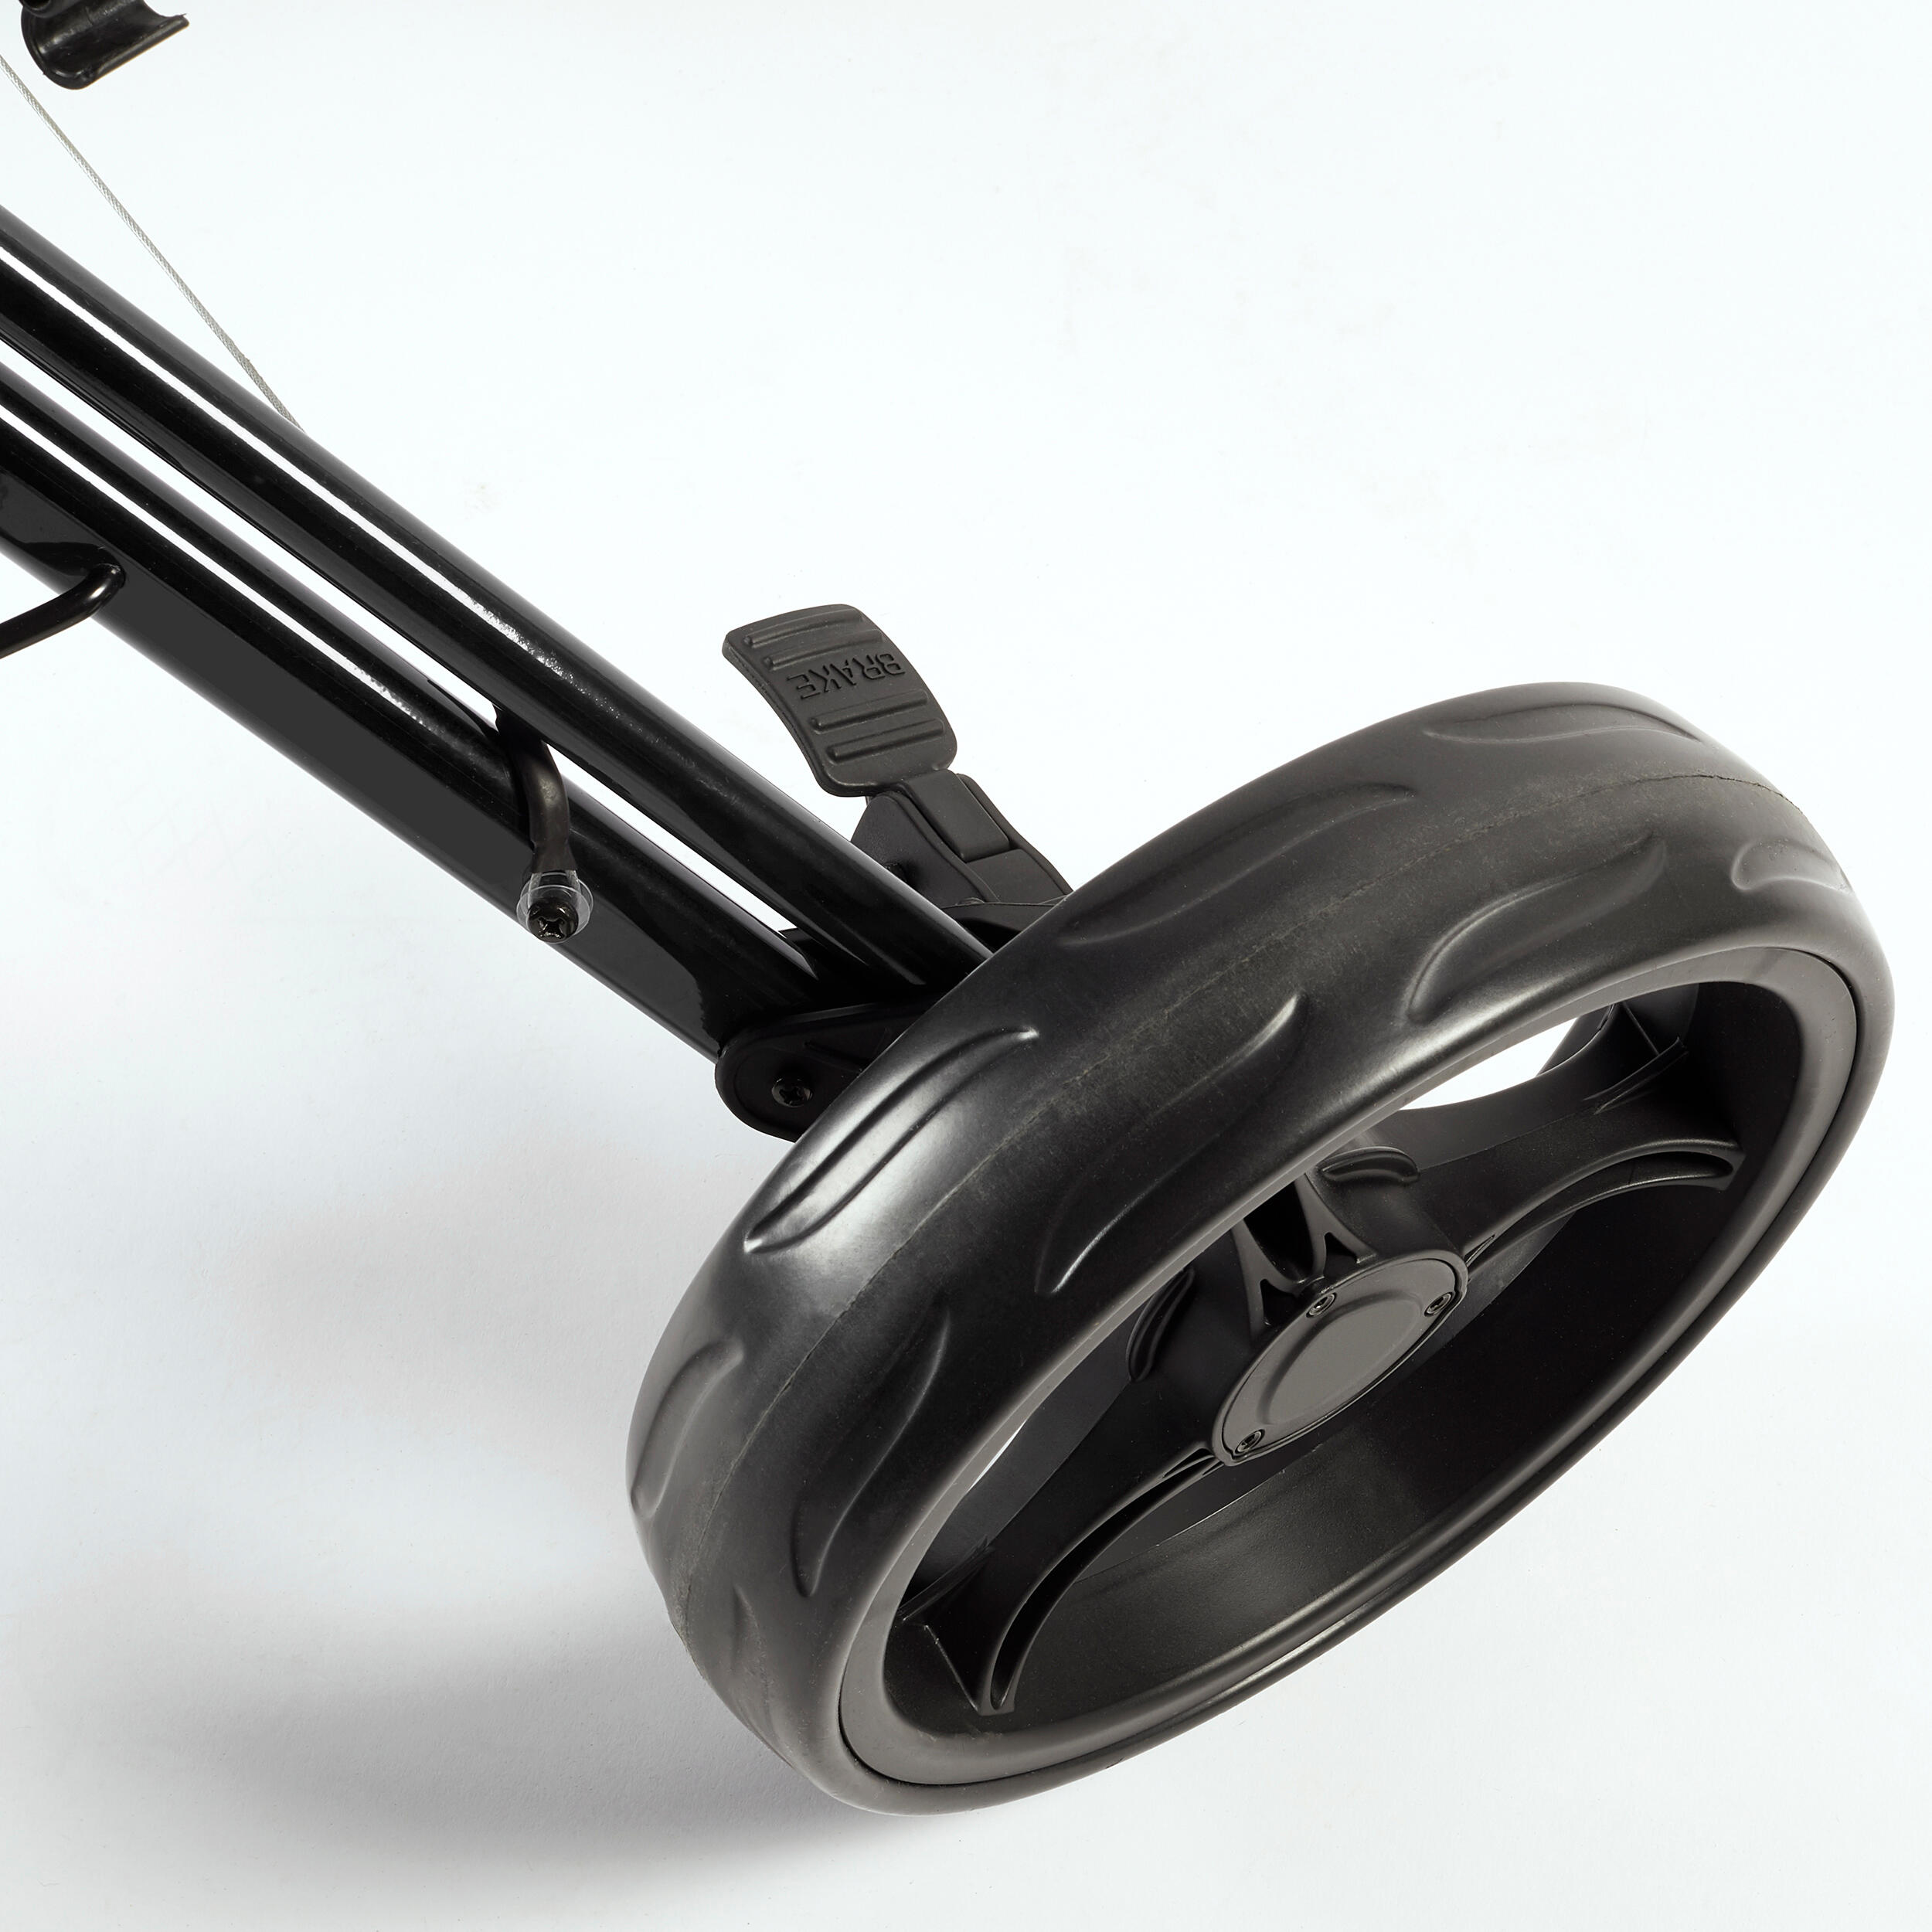 3-Wheel Compact Golf Trolley - Inesis 900 Black - INESIS